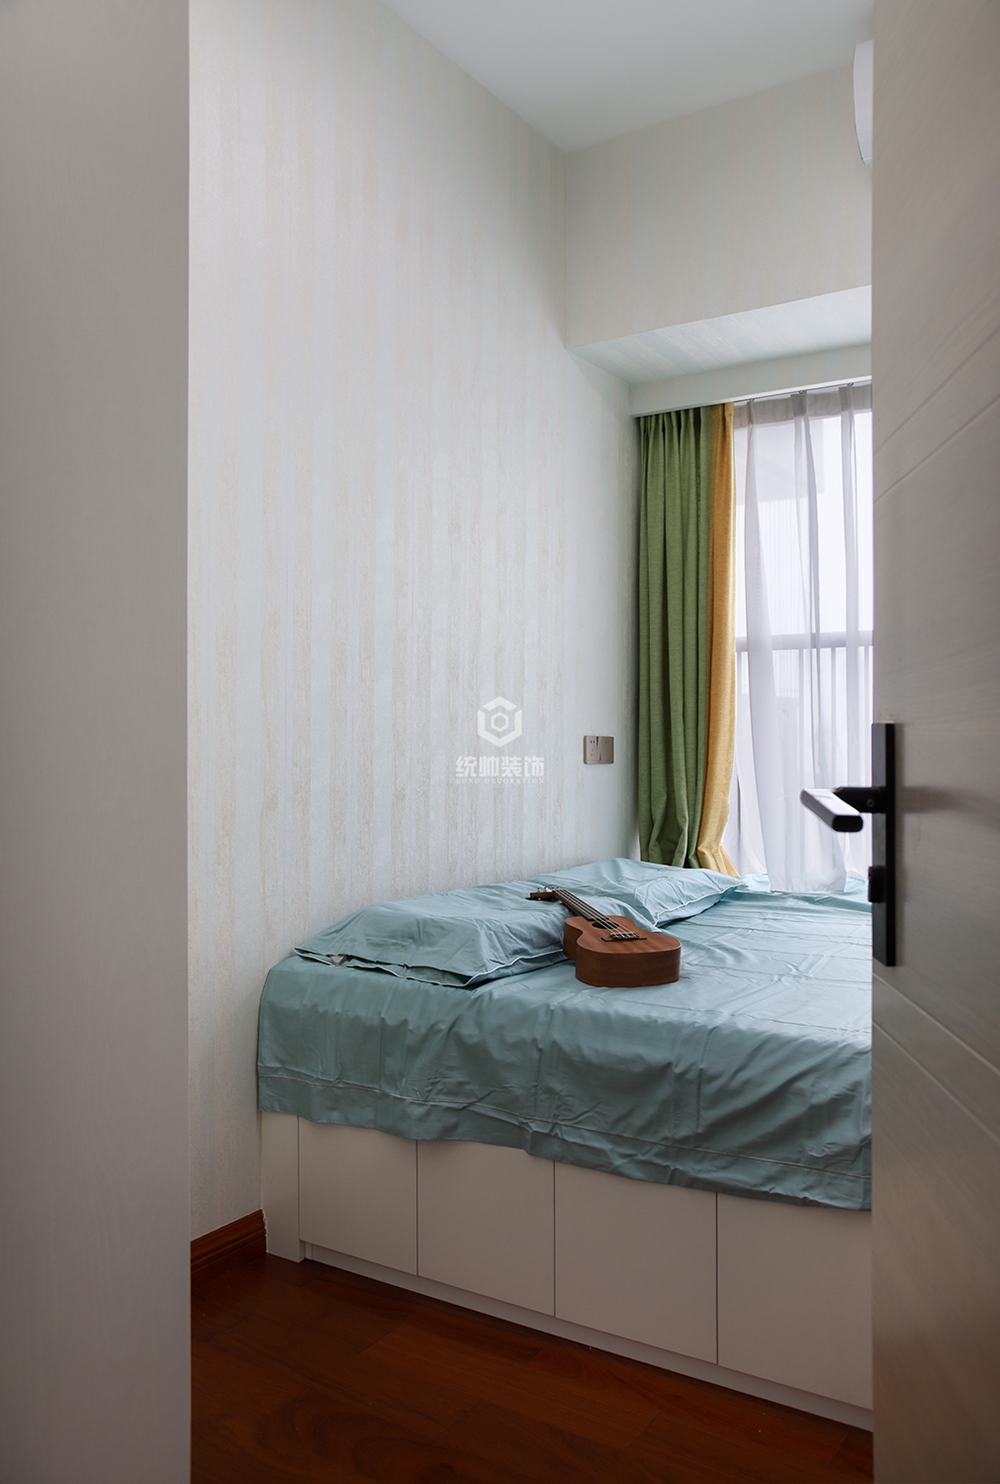 浦东新区天河尚海100平方现代简约风格三房两厅卧室装修效果图